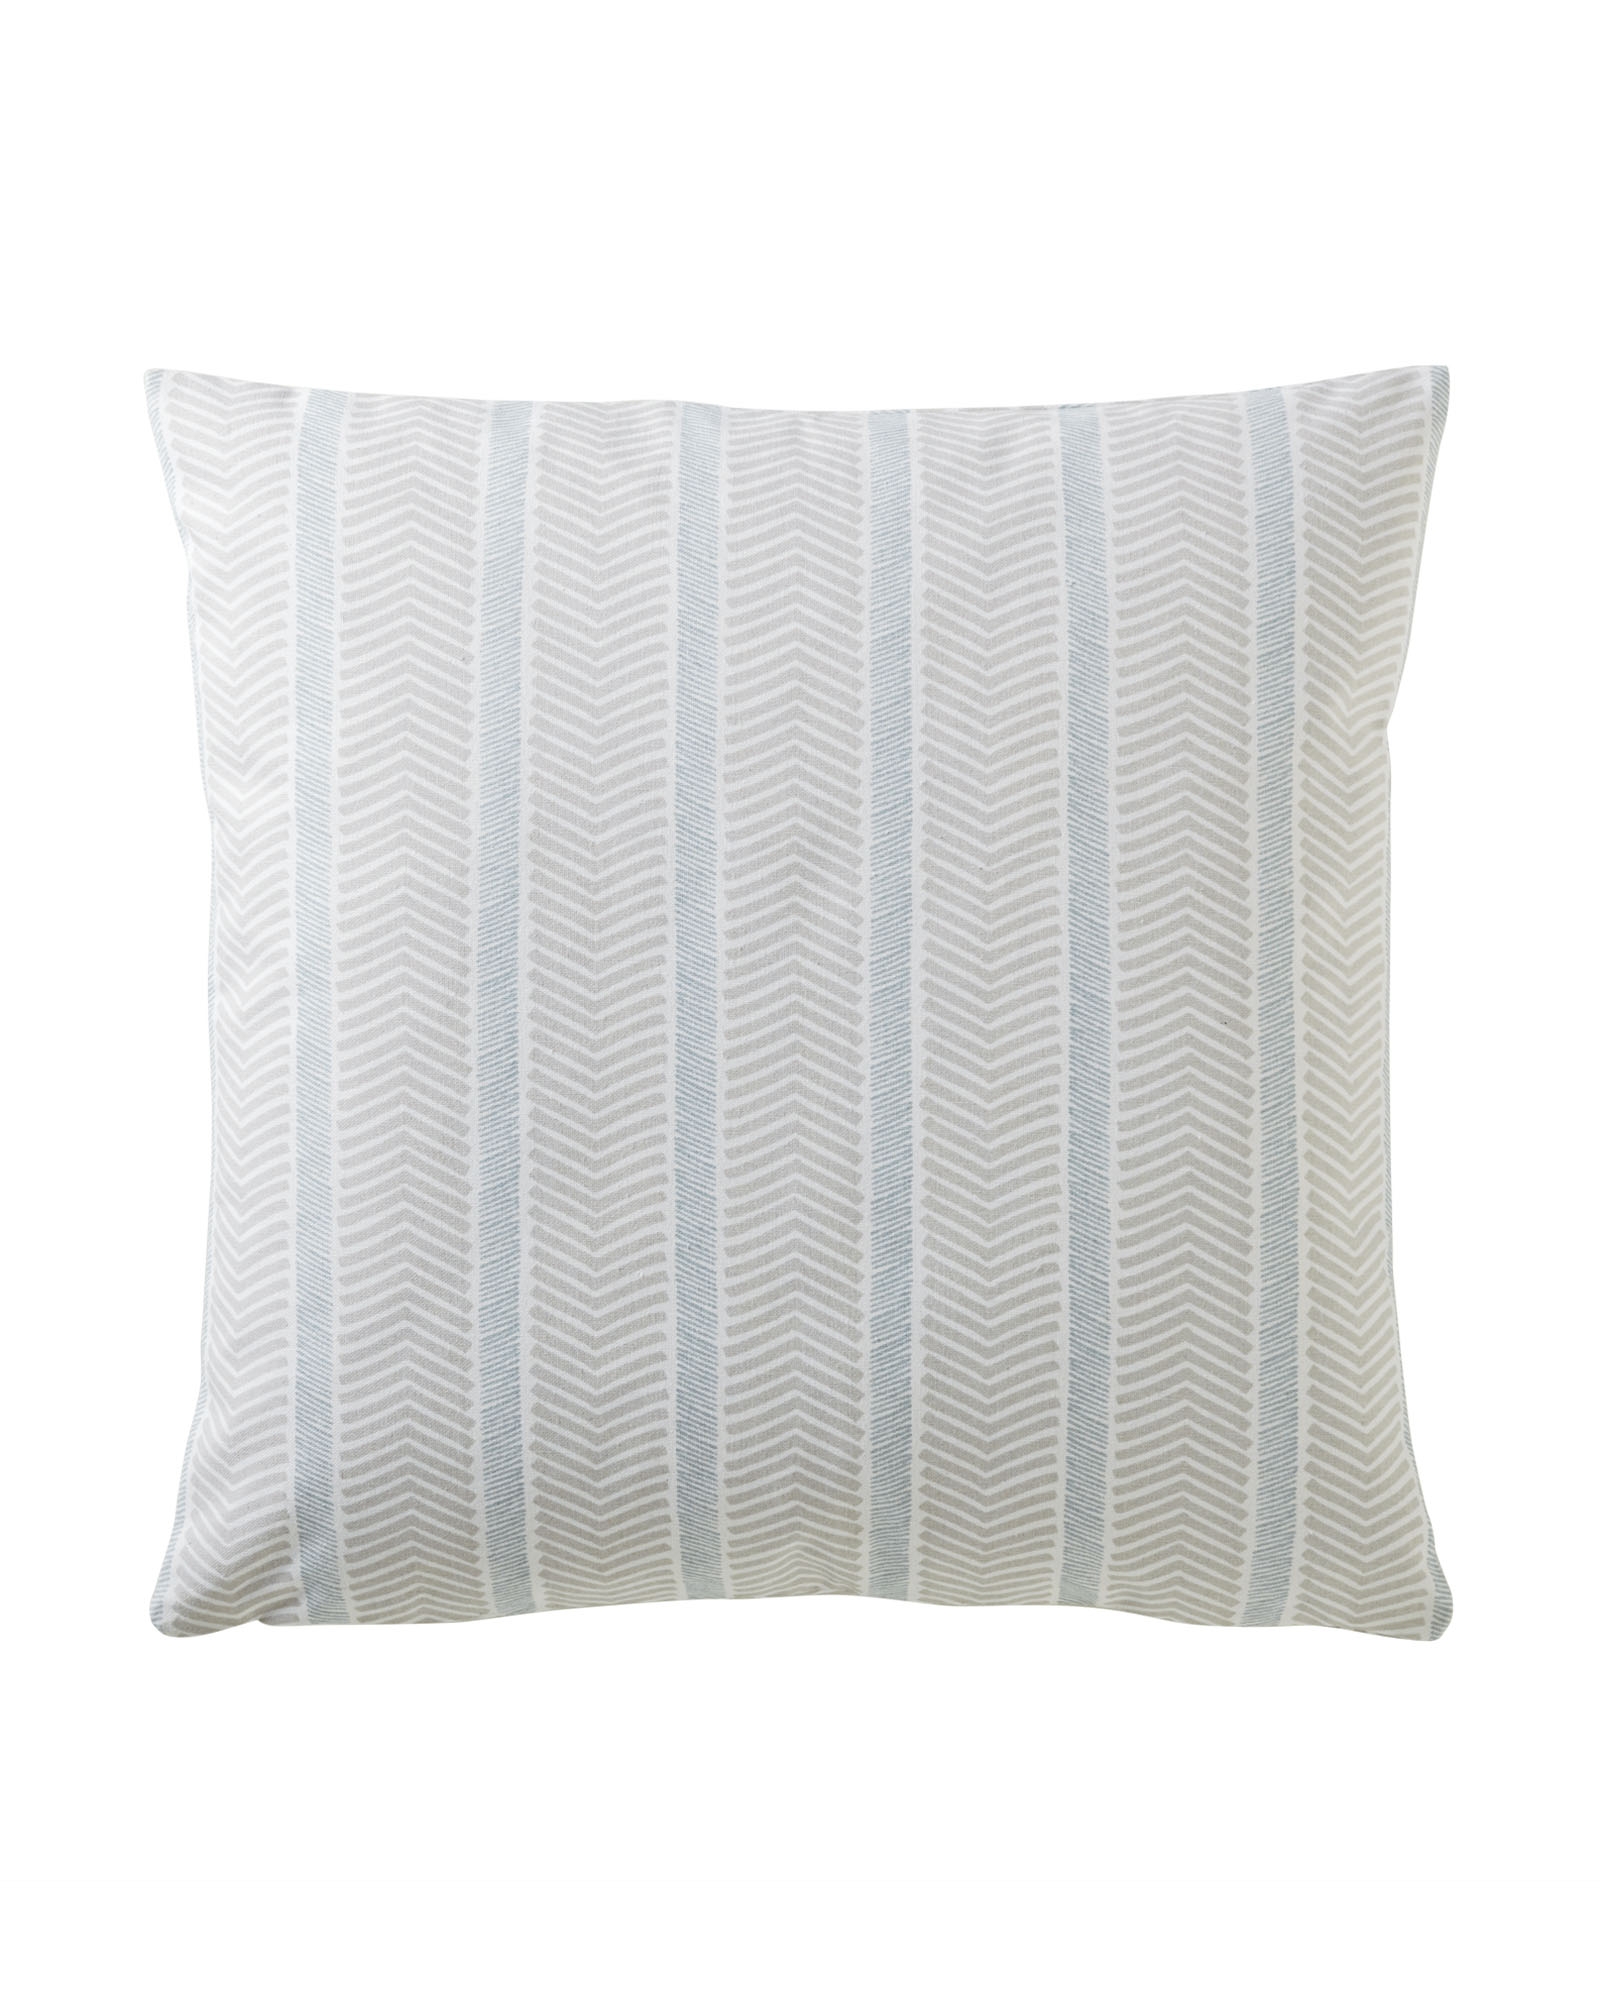 Herringbone Pillow Covers - Light Bark- 20"SQ-Insert sold separately. - Image 0